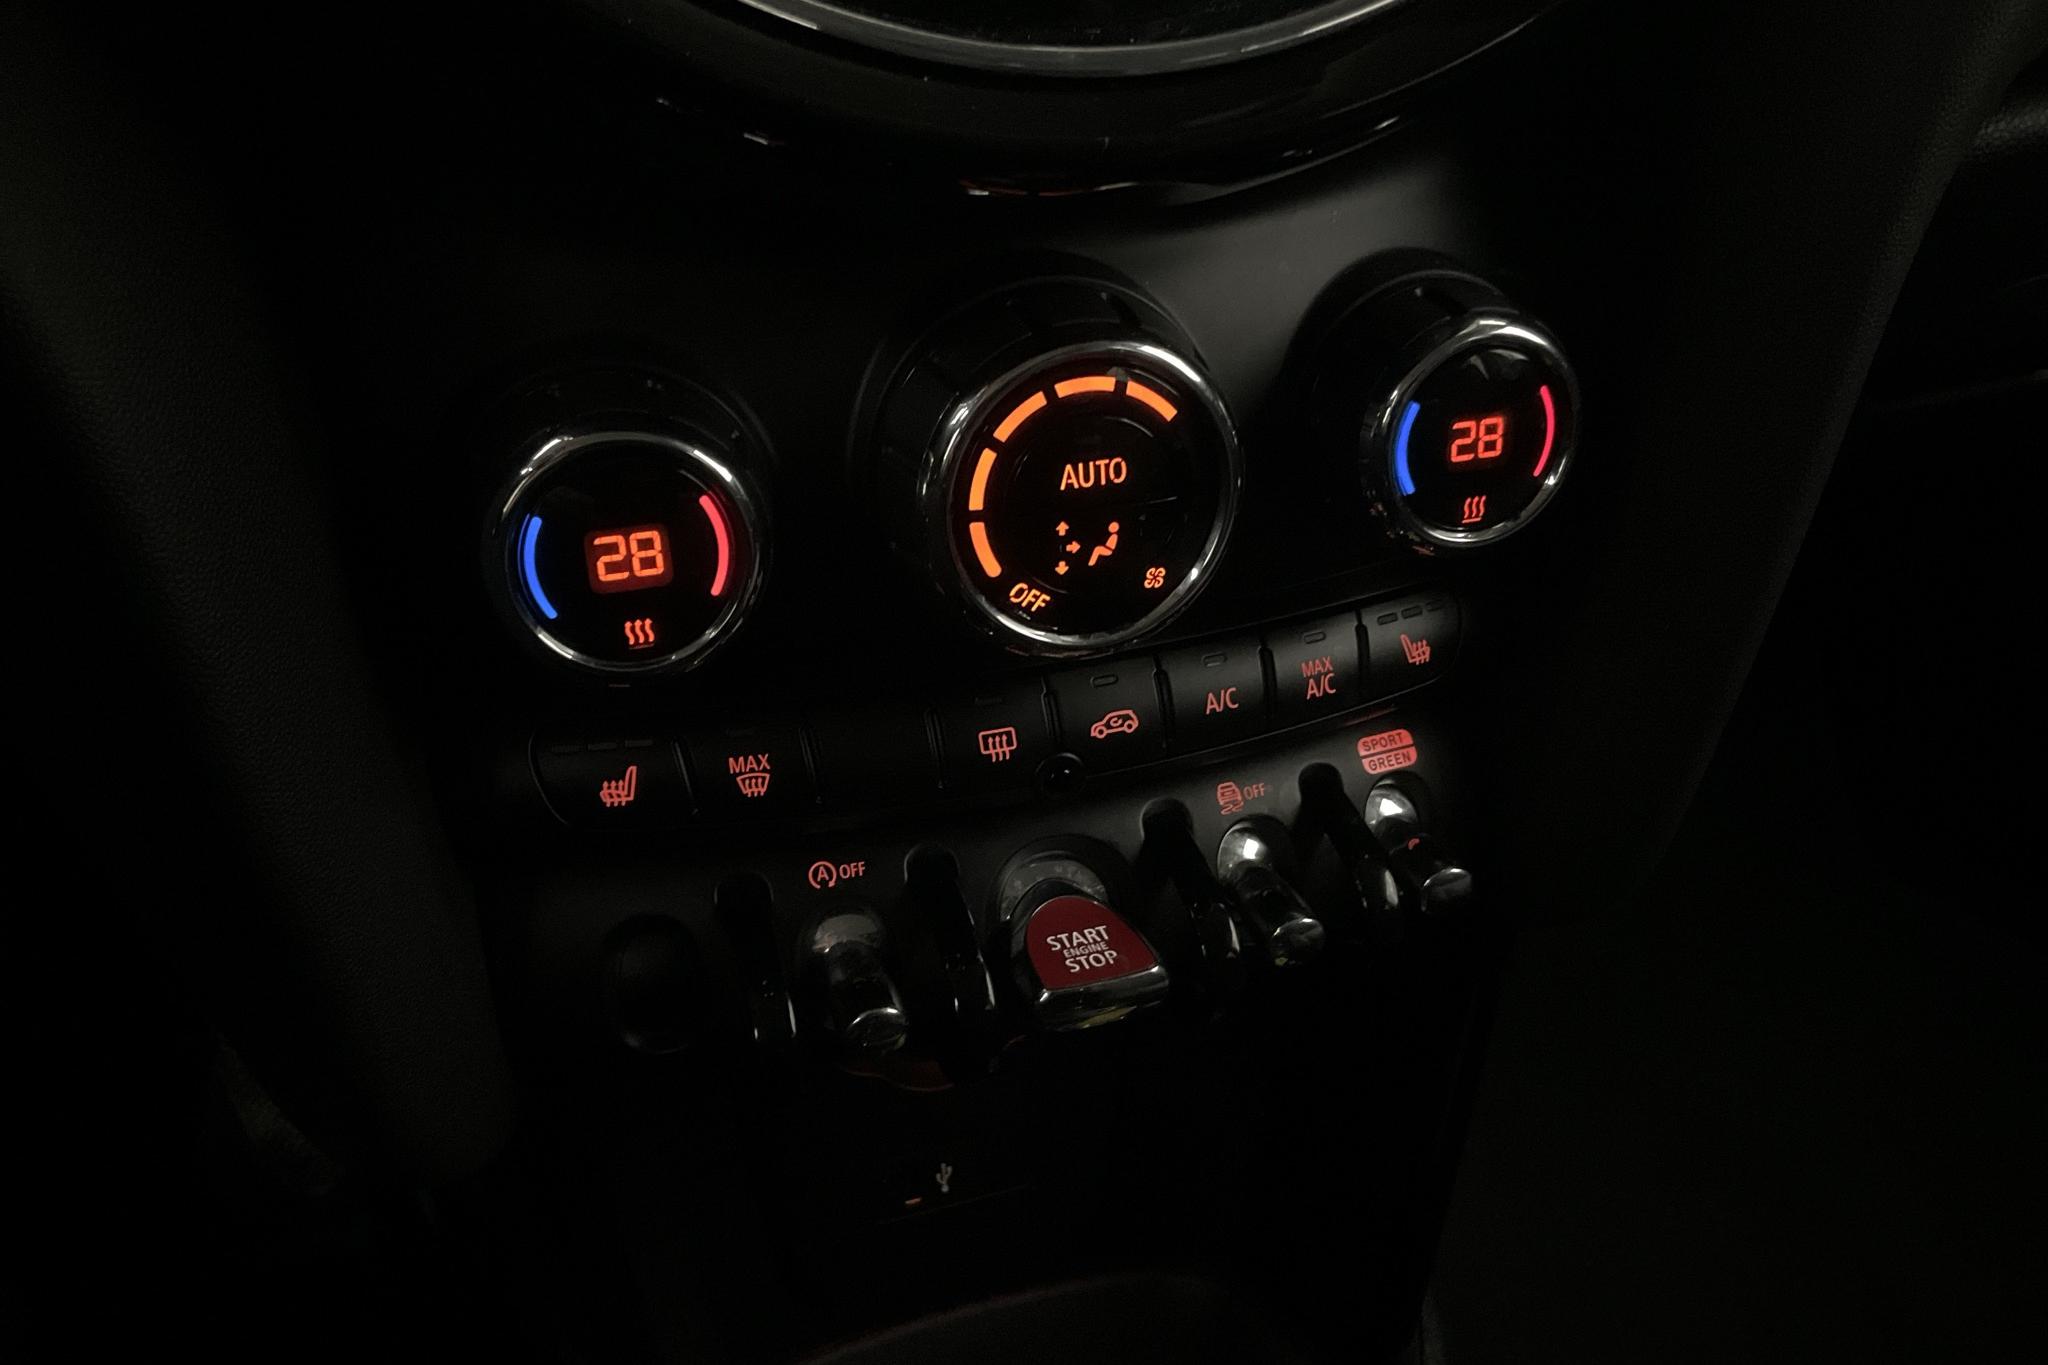 MINI Cooper Hatch 5dr, F55 LCI (136hk) - 44 560 km - Automatic - silver - 2022